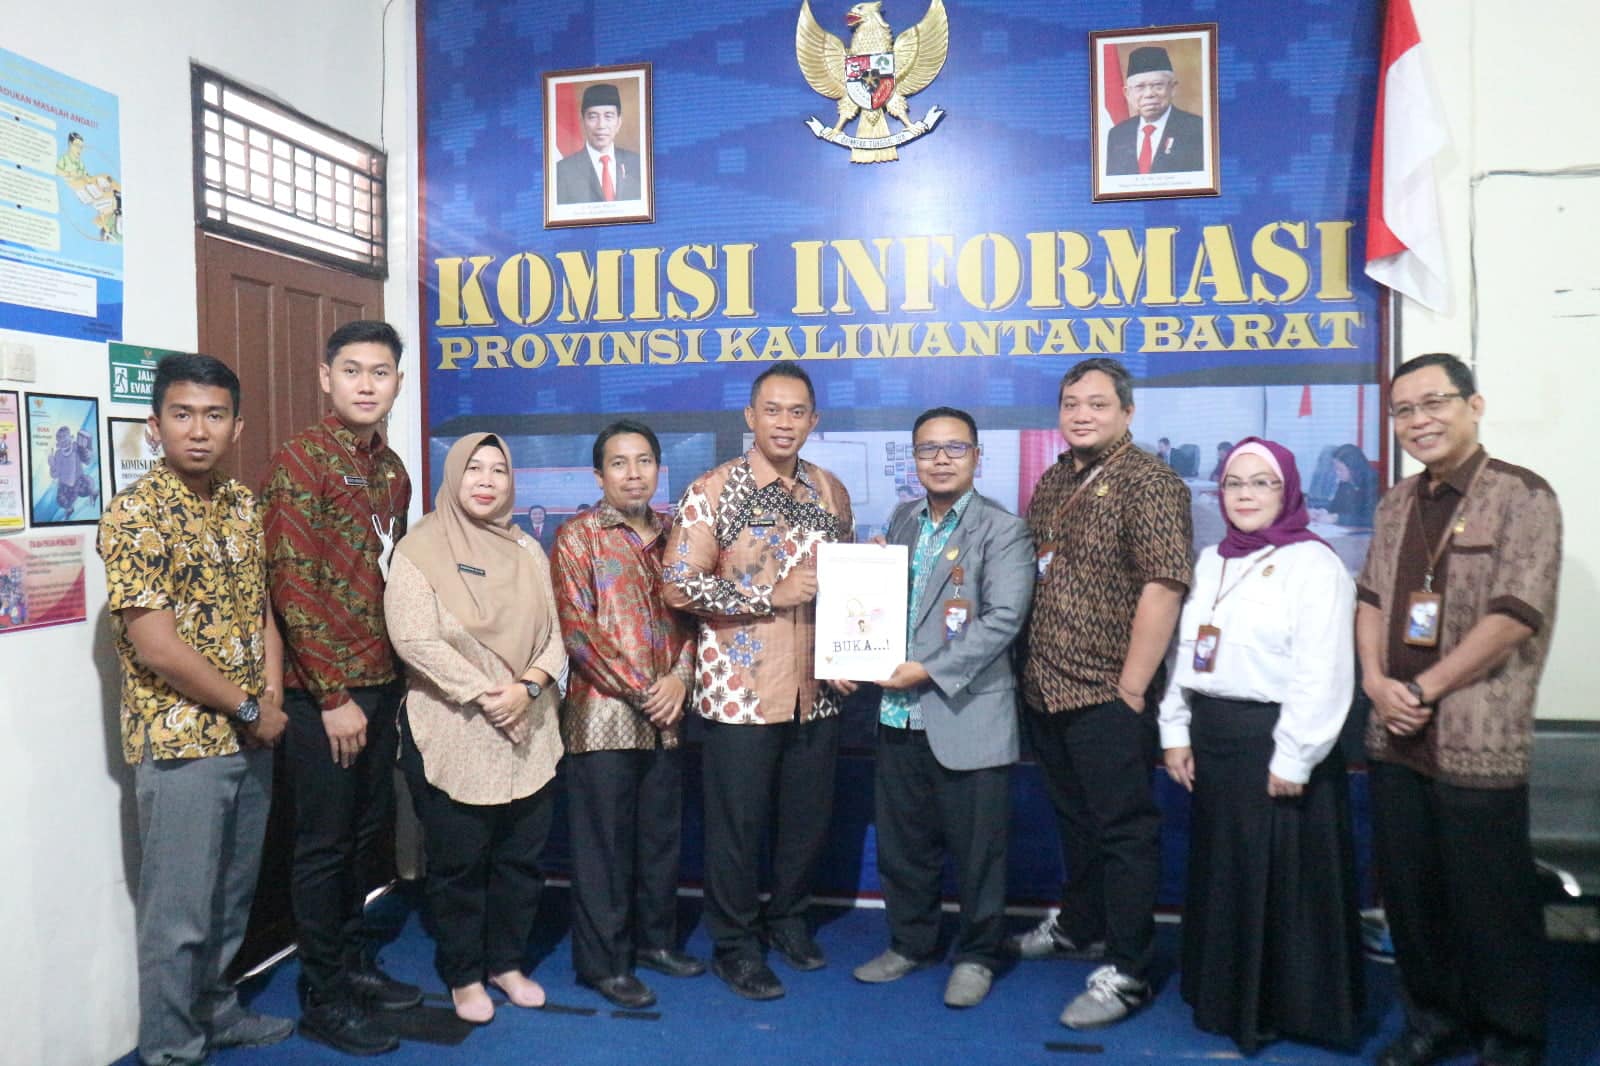 Komisi Informasi Provinsi Kalimantan Barat. (Foto: Jauhari)